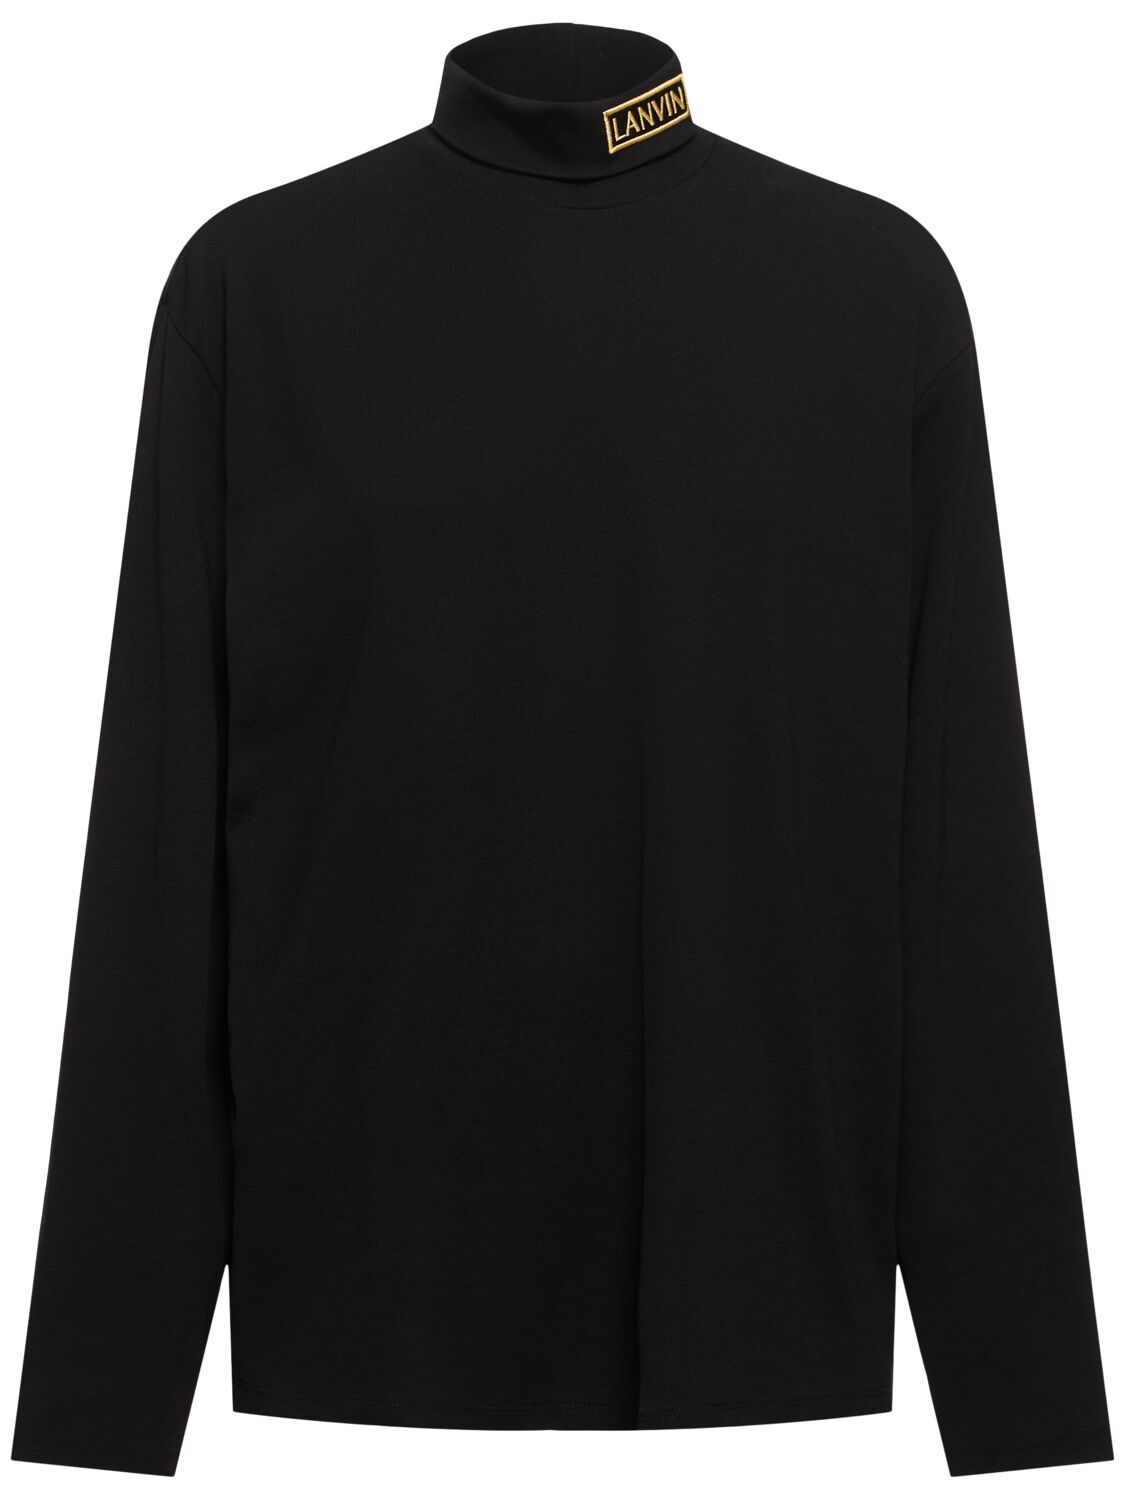 Lanvin Jersey Long Sleeve Turtleneck T-shirt In Black